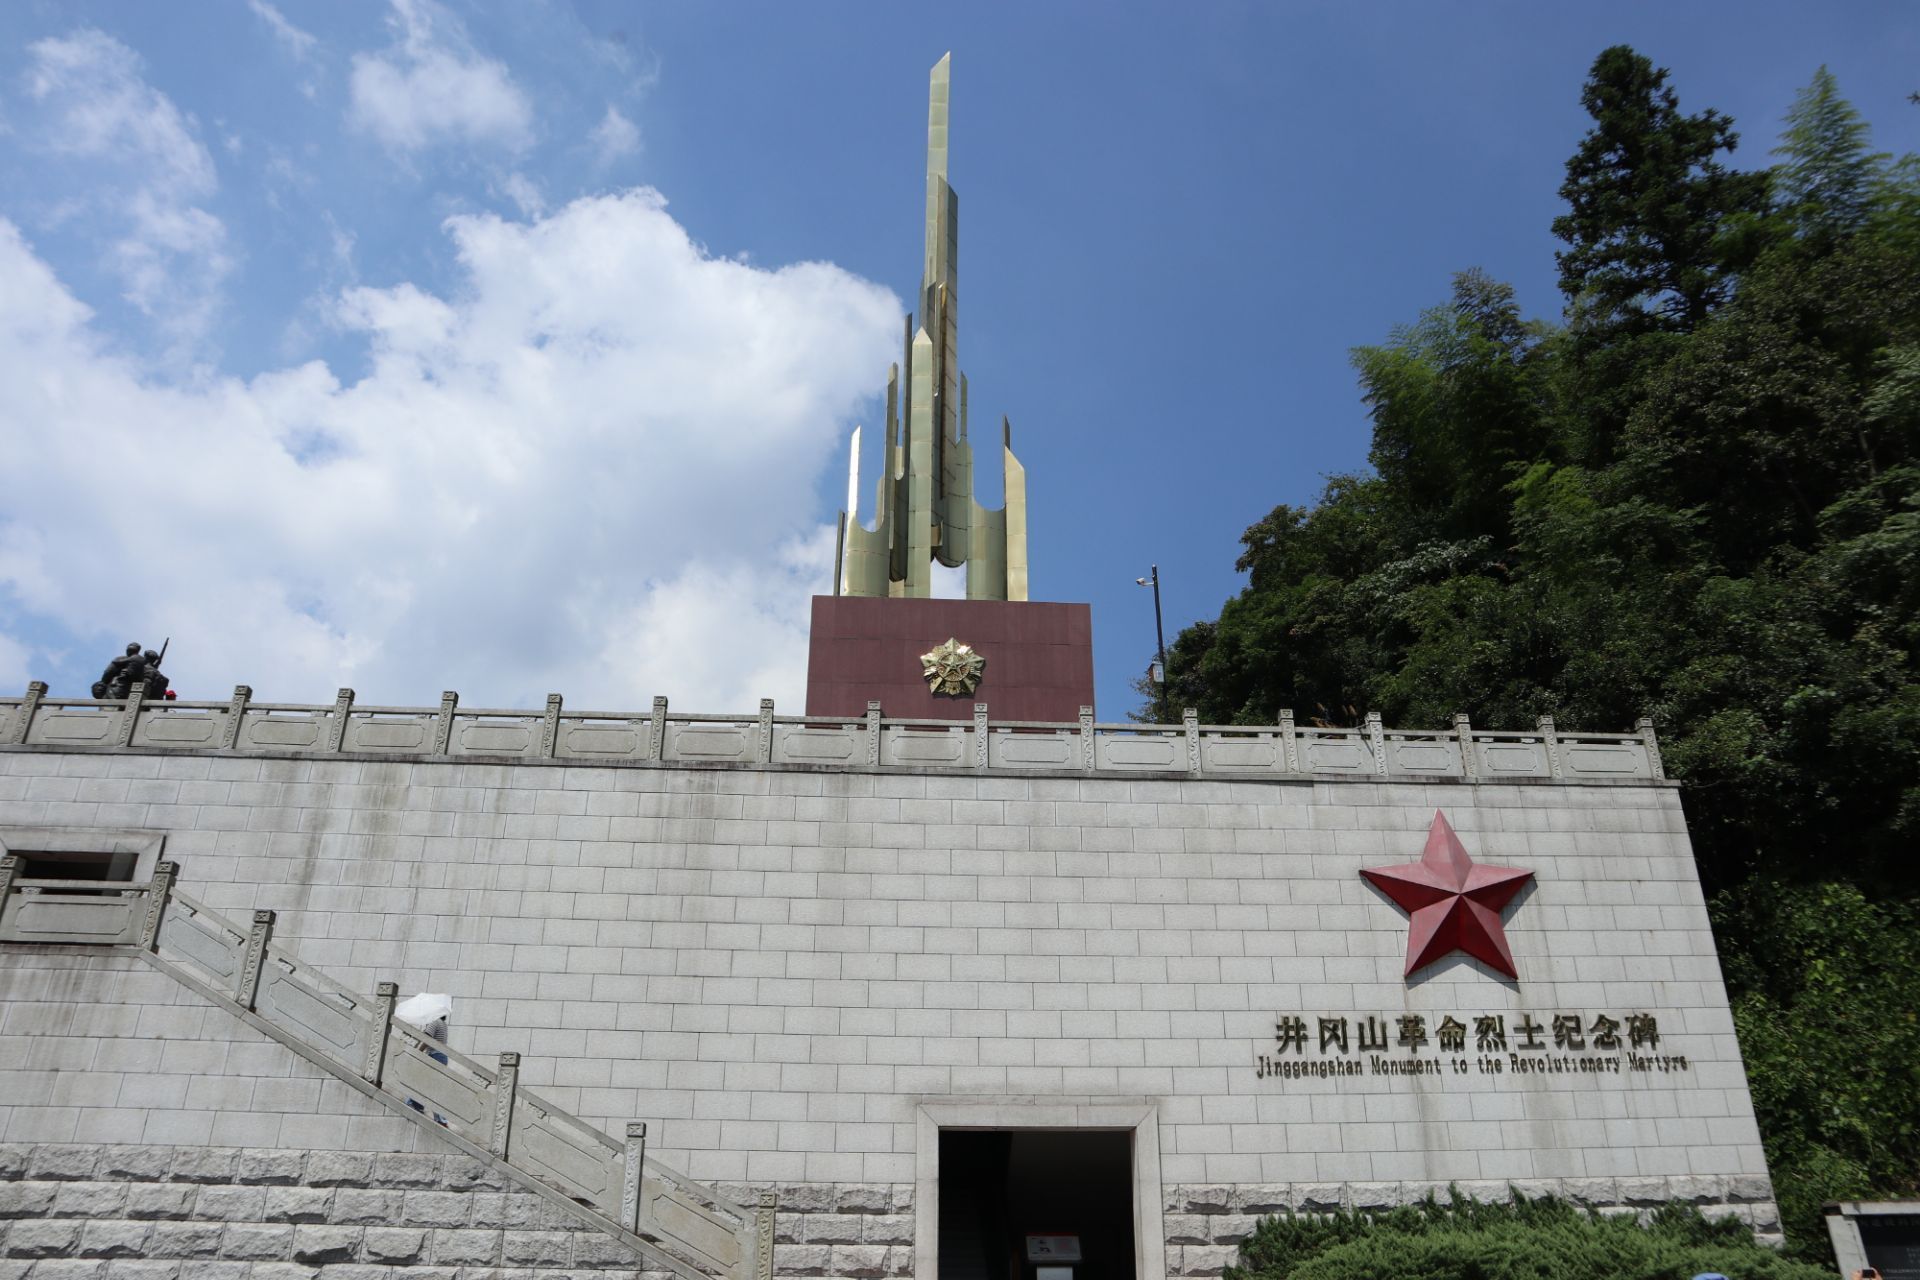 小井红军烈士墓图片